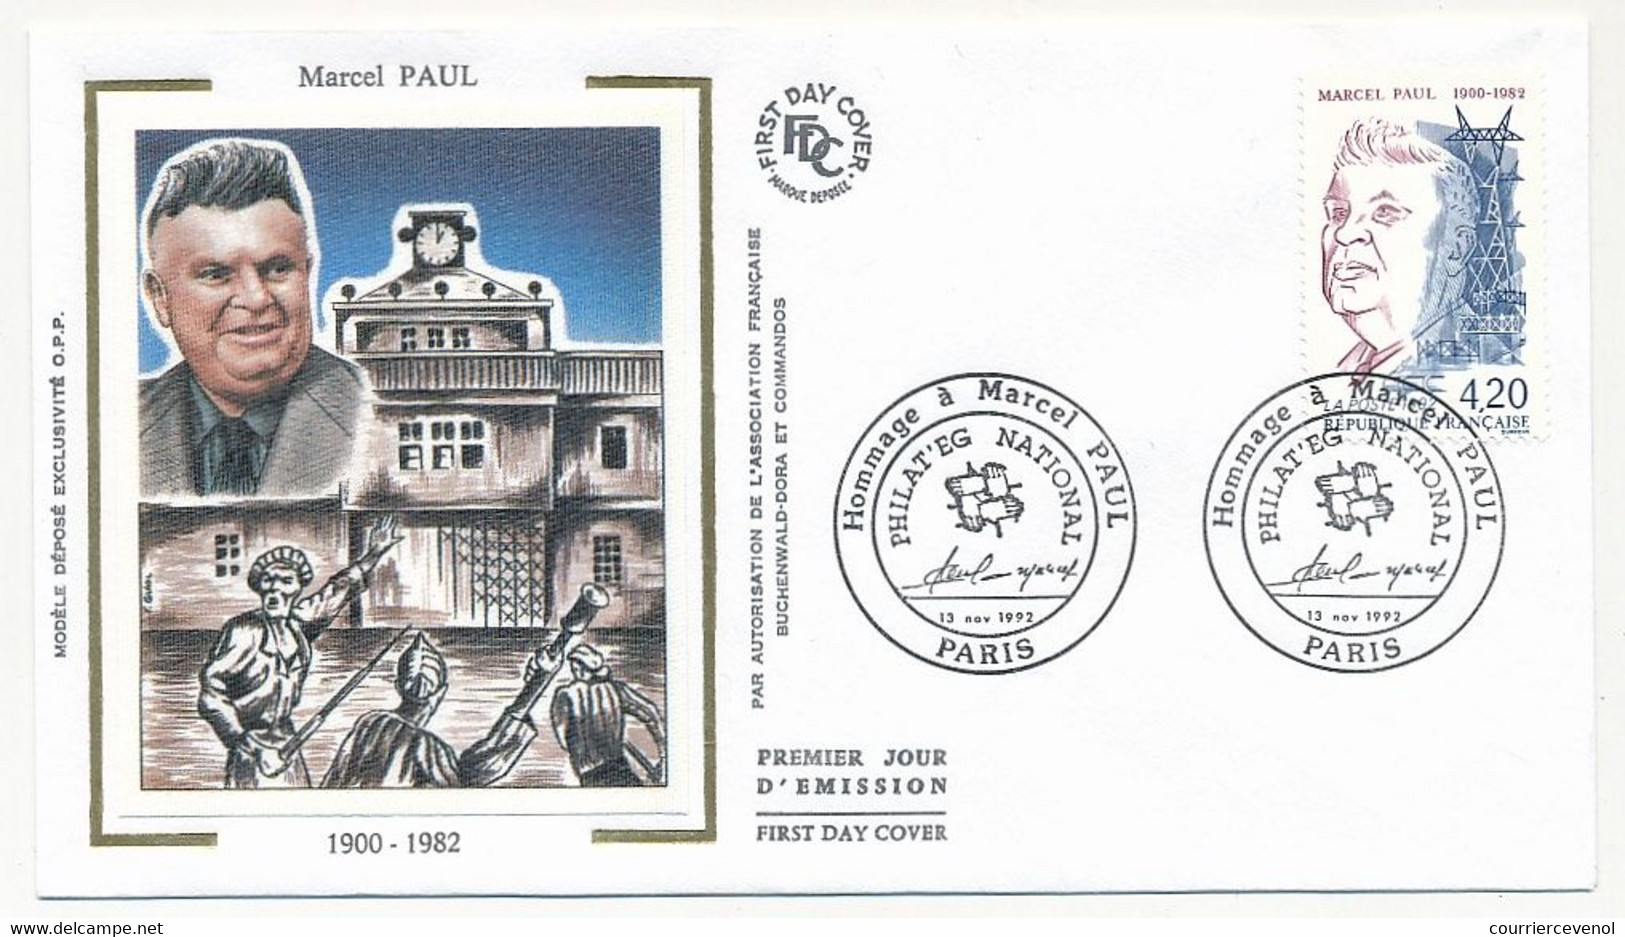 FRANCE - 2 Enveloppes FDC Soie - MARCEL PAUL - Paris 13/11/1992 + Paris Philat'eg National Id - 1990-1999